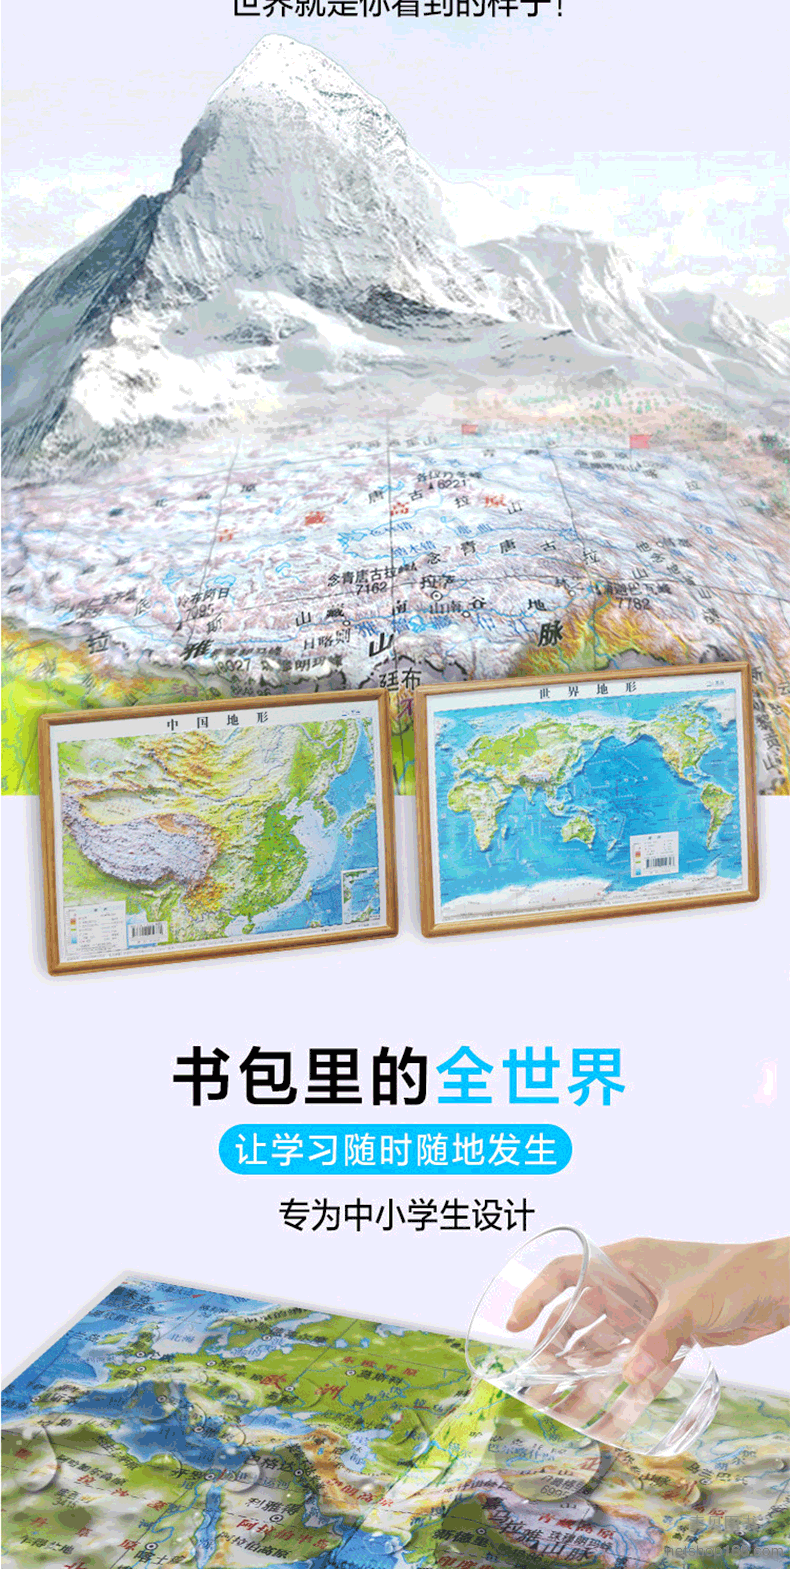 《凹凸立体中国地形图+世界地形图全2张299*230mm学生3-15岁通用地理地图》